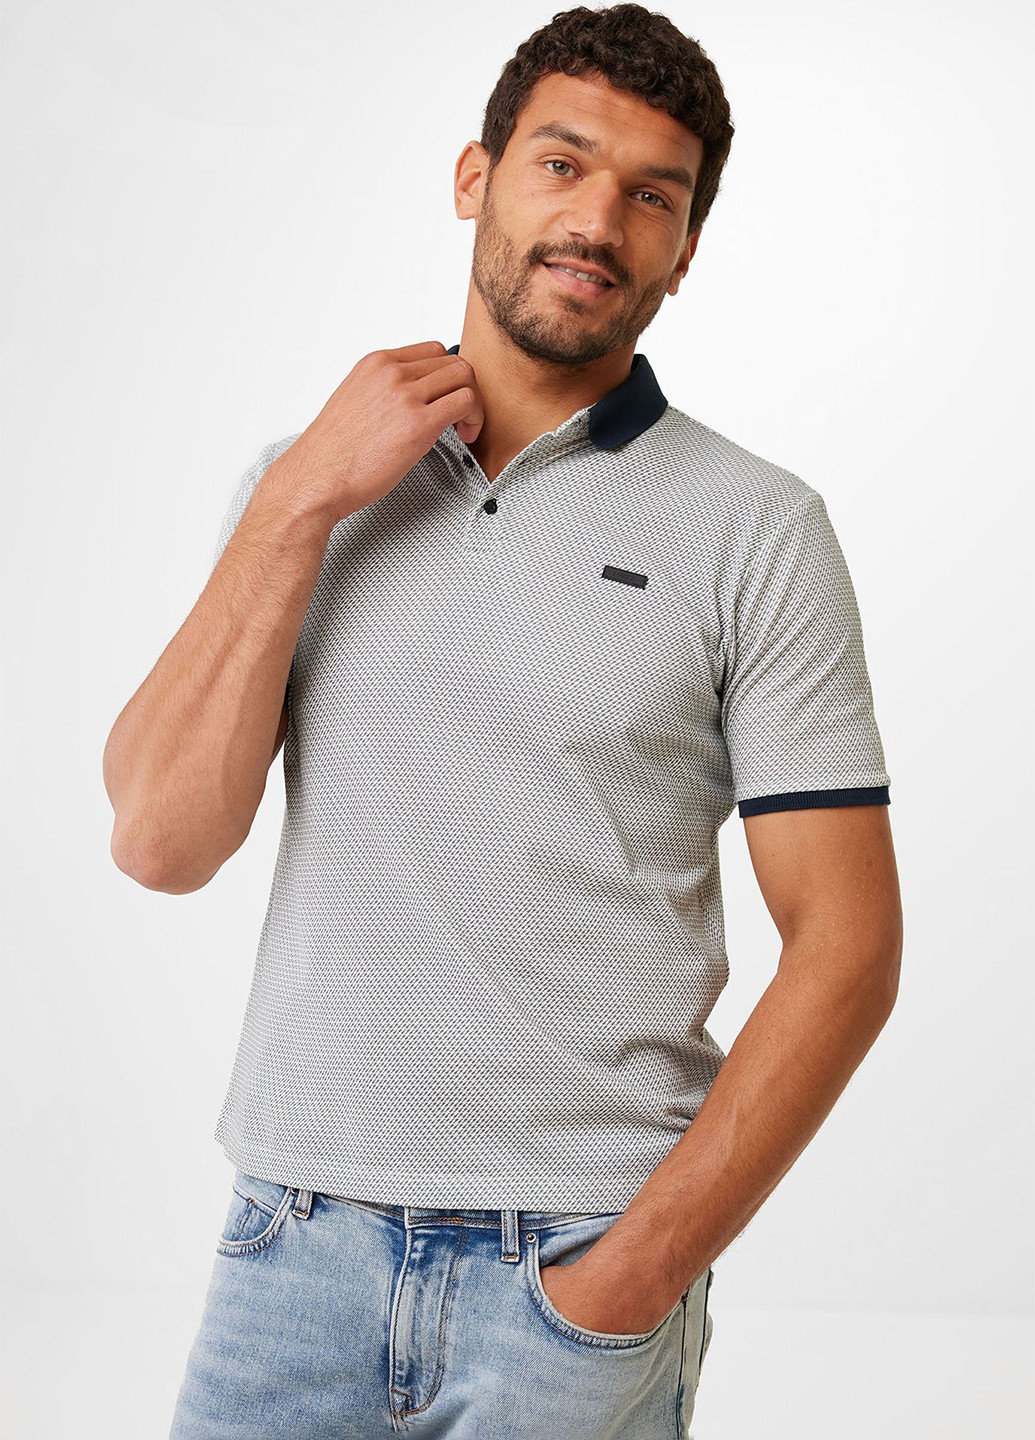 Цветная футболка-поло для мужчин Mexx с геометрическим узором